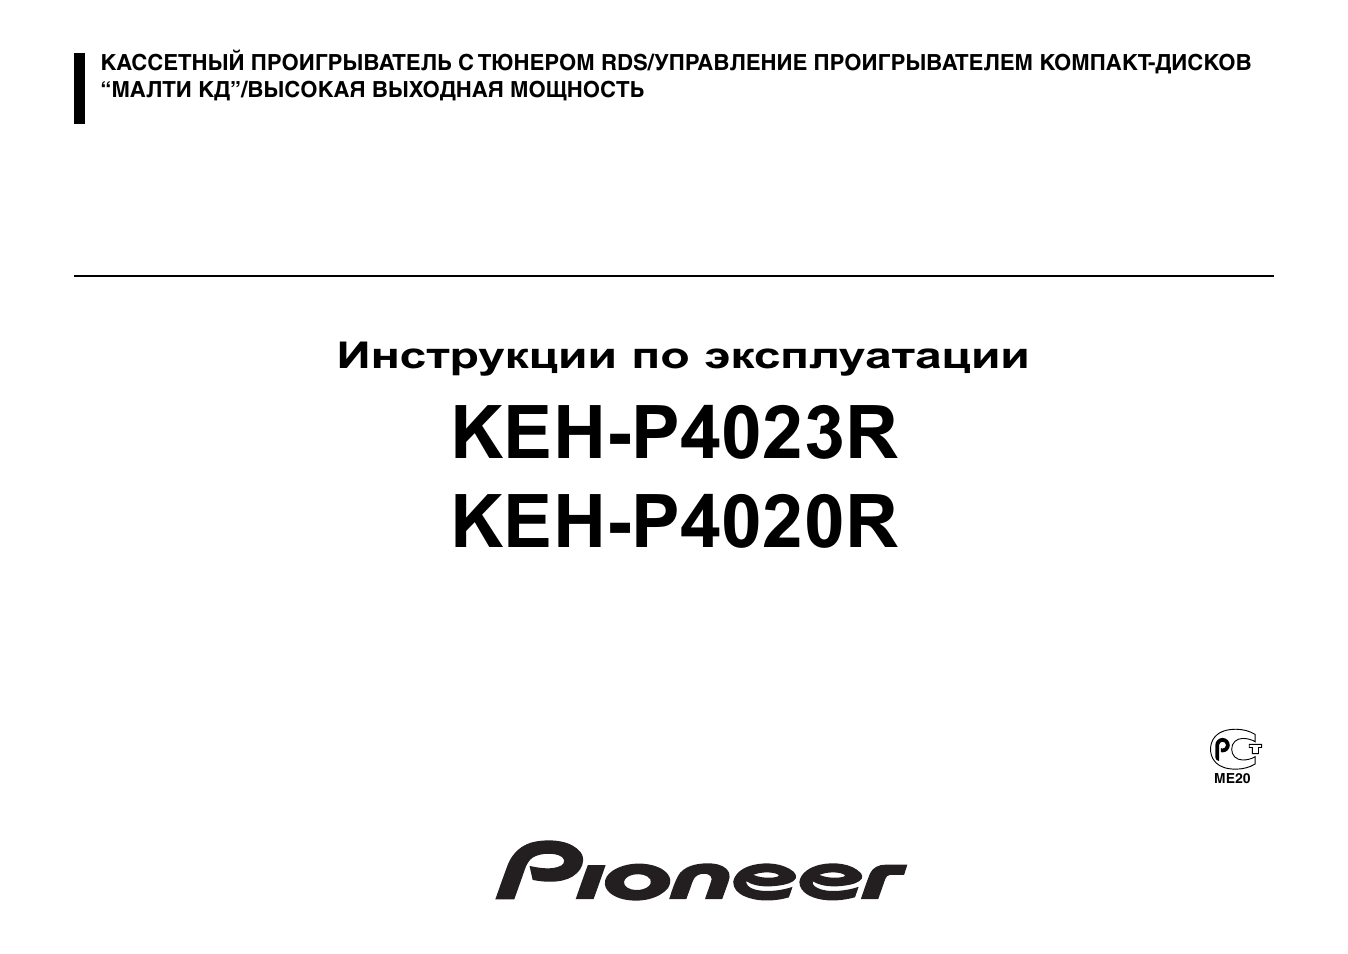 Инструкция по эксплуатации Pioneer KEH-P4023R | 20 страниц